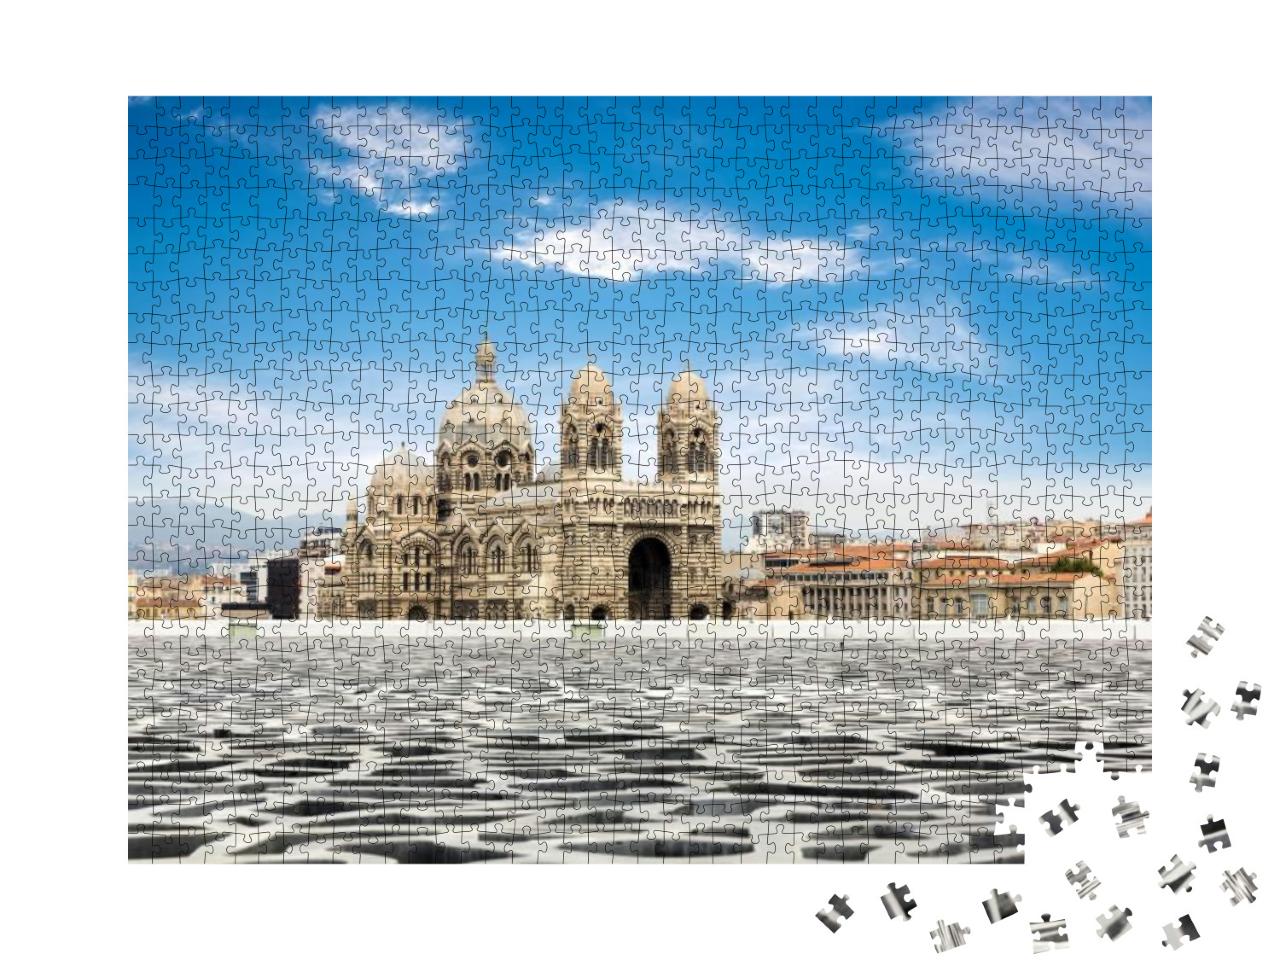 Puzzle 1000 Teile „Cathedral de la Major, Wahrzeichen von Marseille, Frankreich“